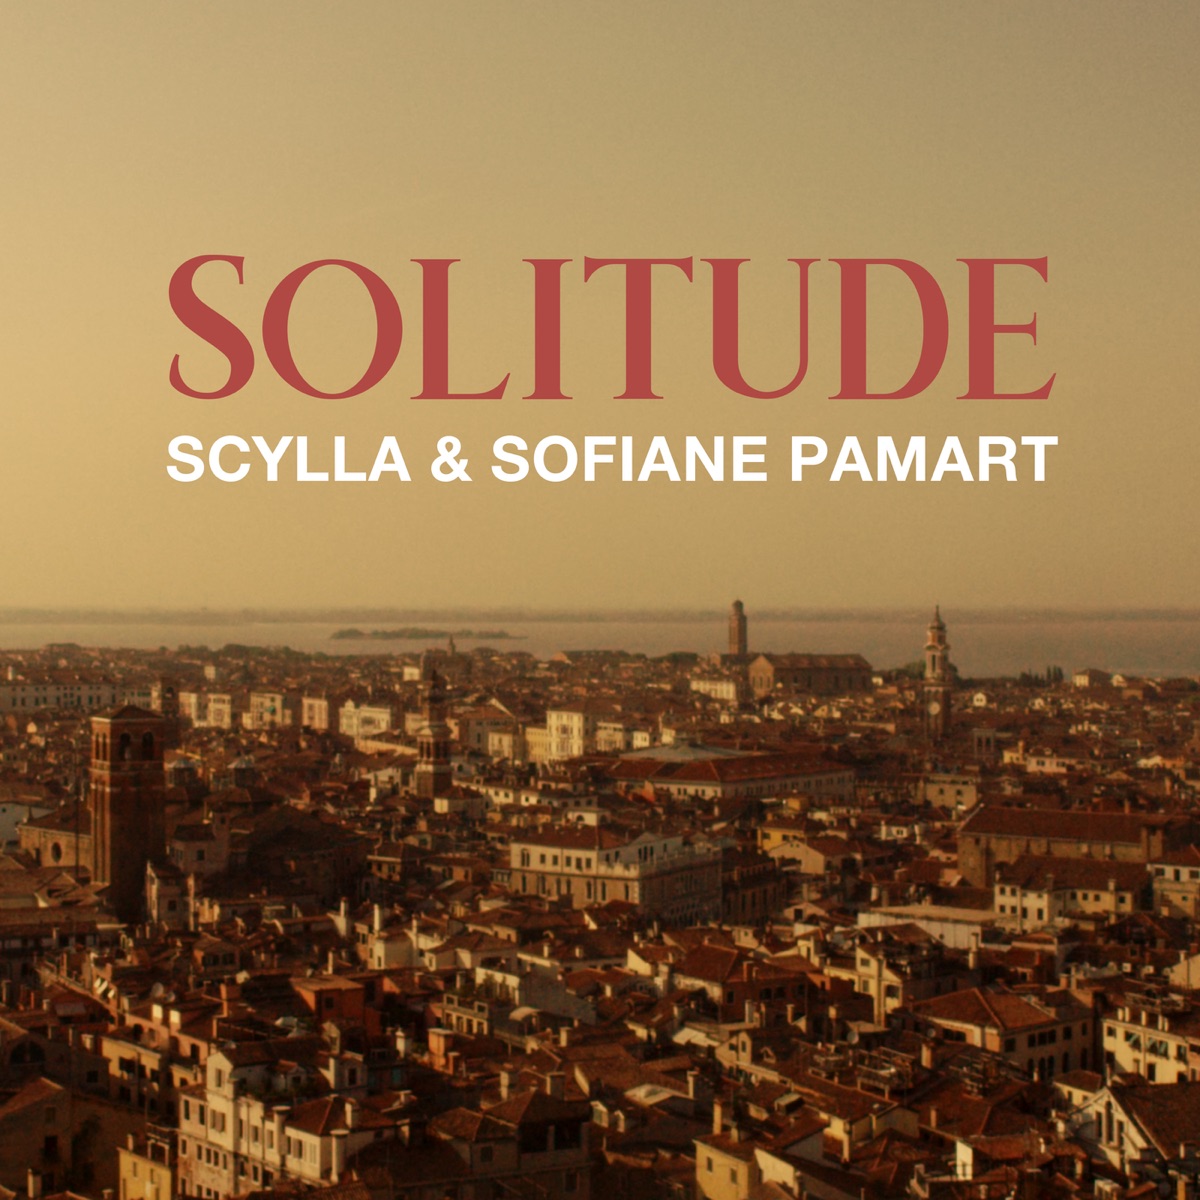 Le monde est à mes pieds - Single par Scylla & Sofiane Pamart sur Apple  Music